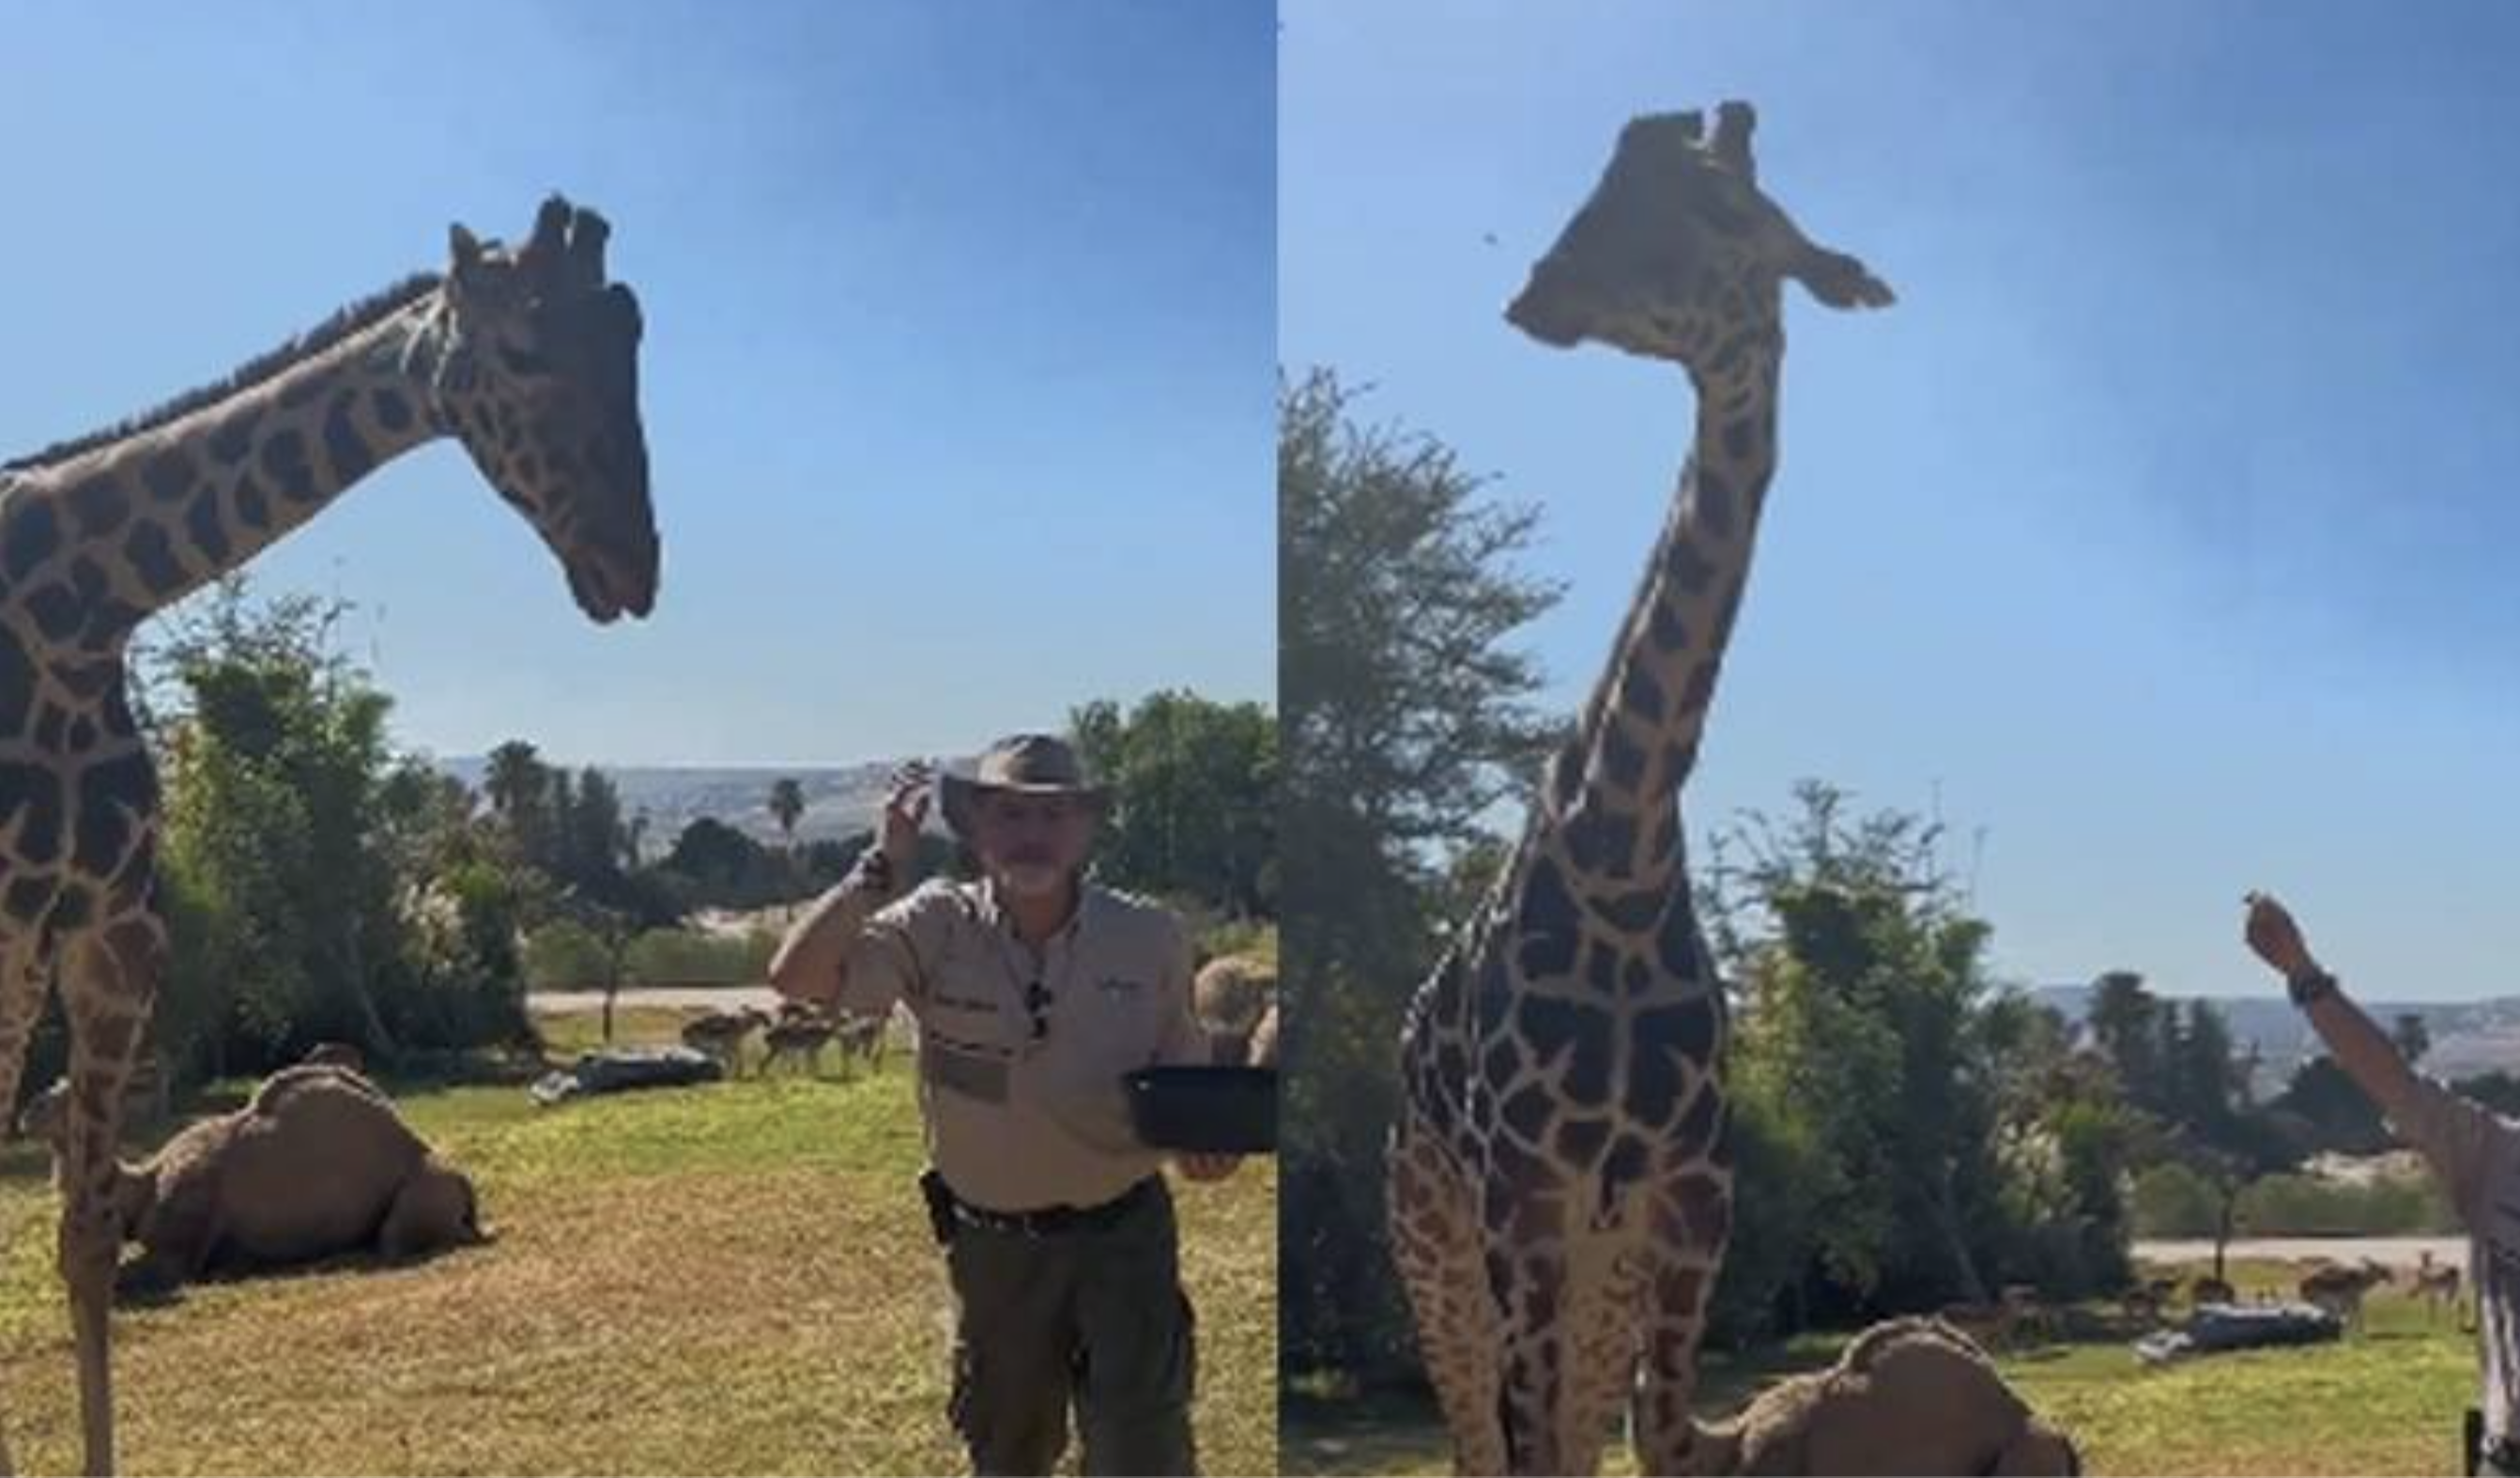 Benito, la Jirafa viajera, encuentra alegría en su nuevo hogar Africam Safari Puebla